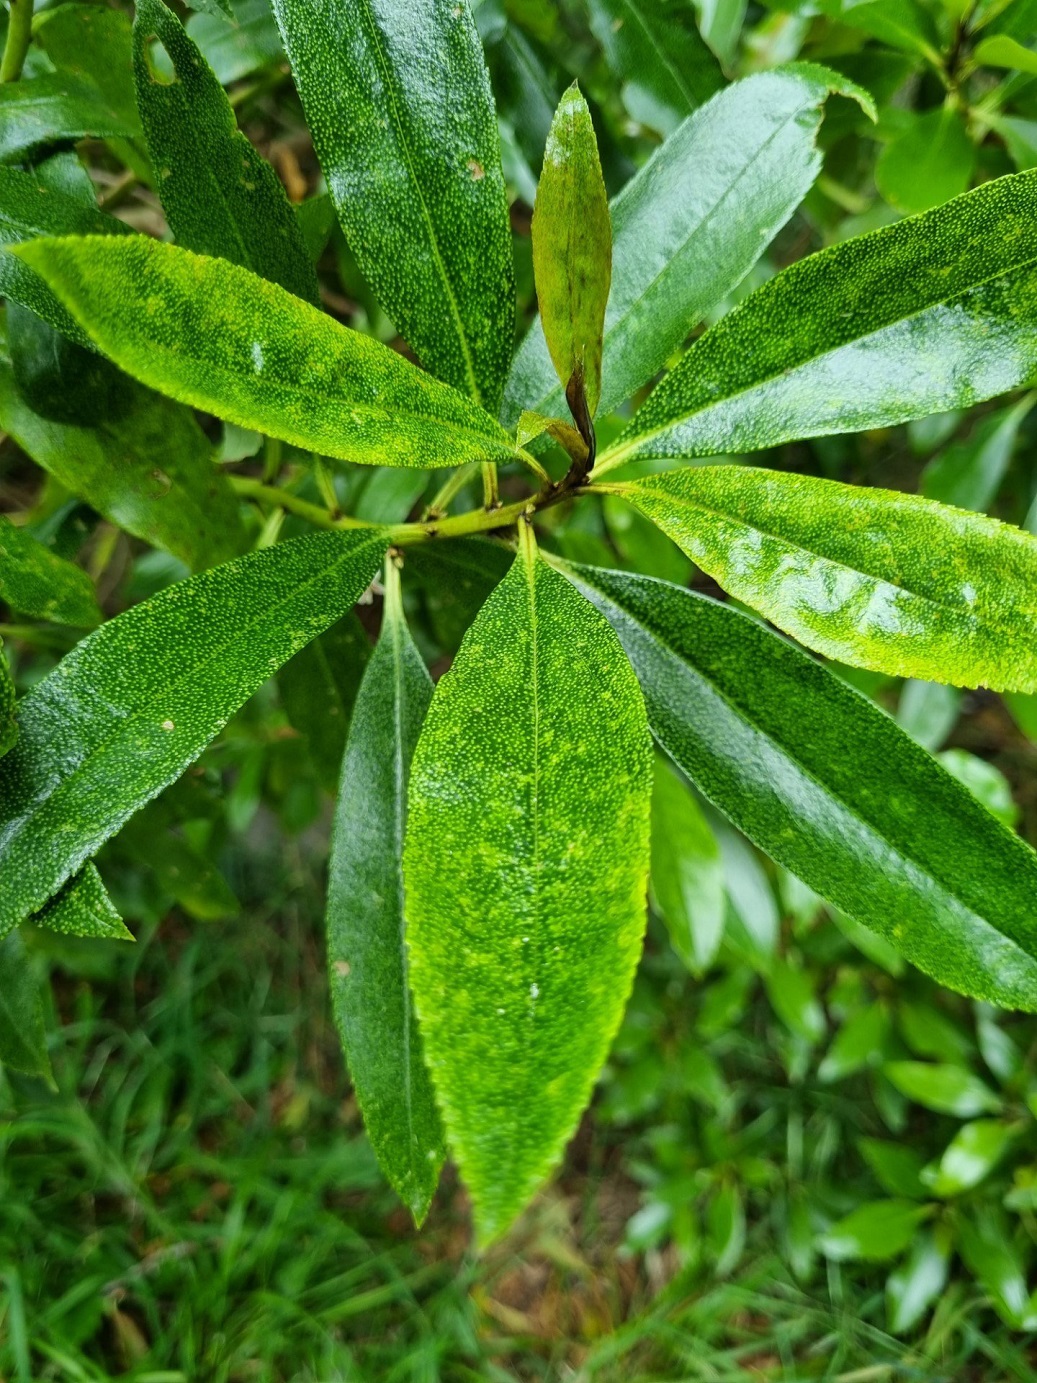 A ngaio leaf